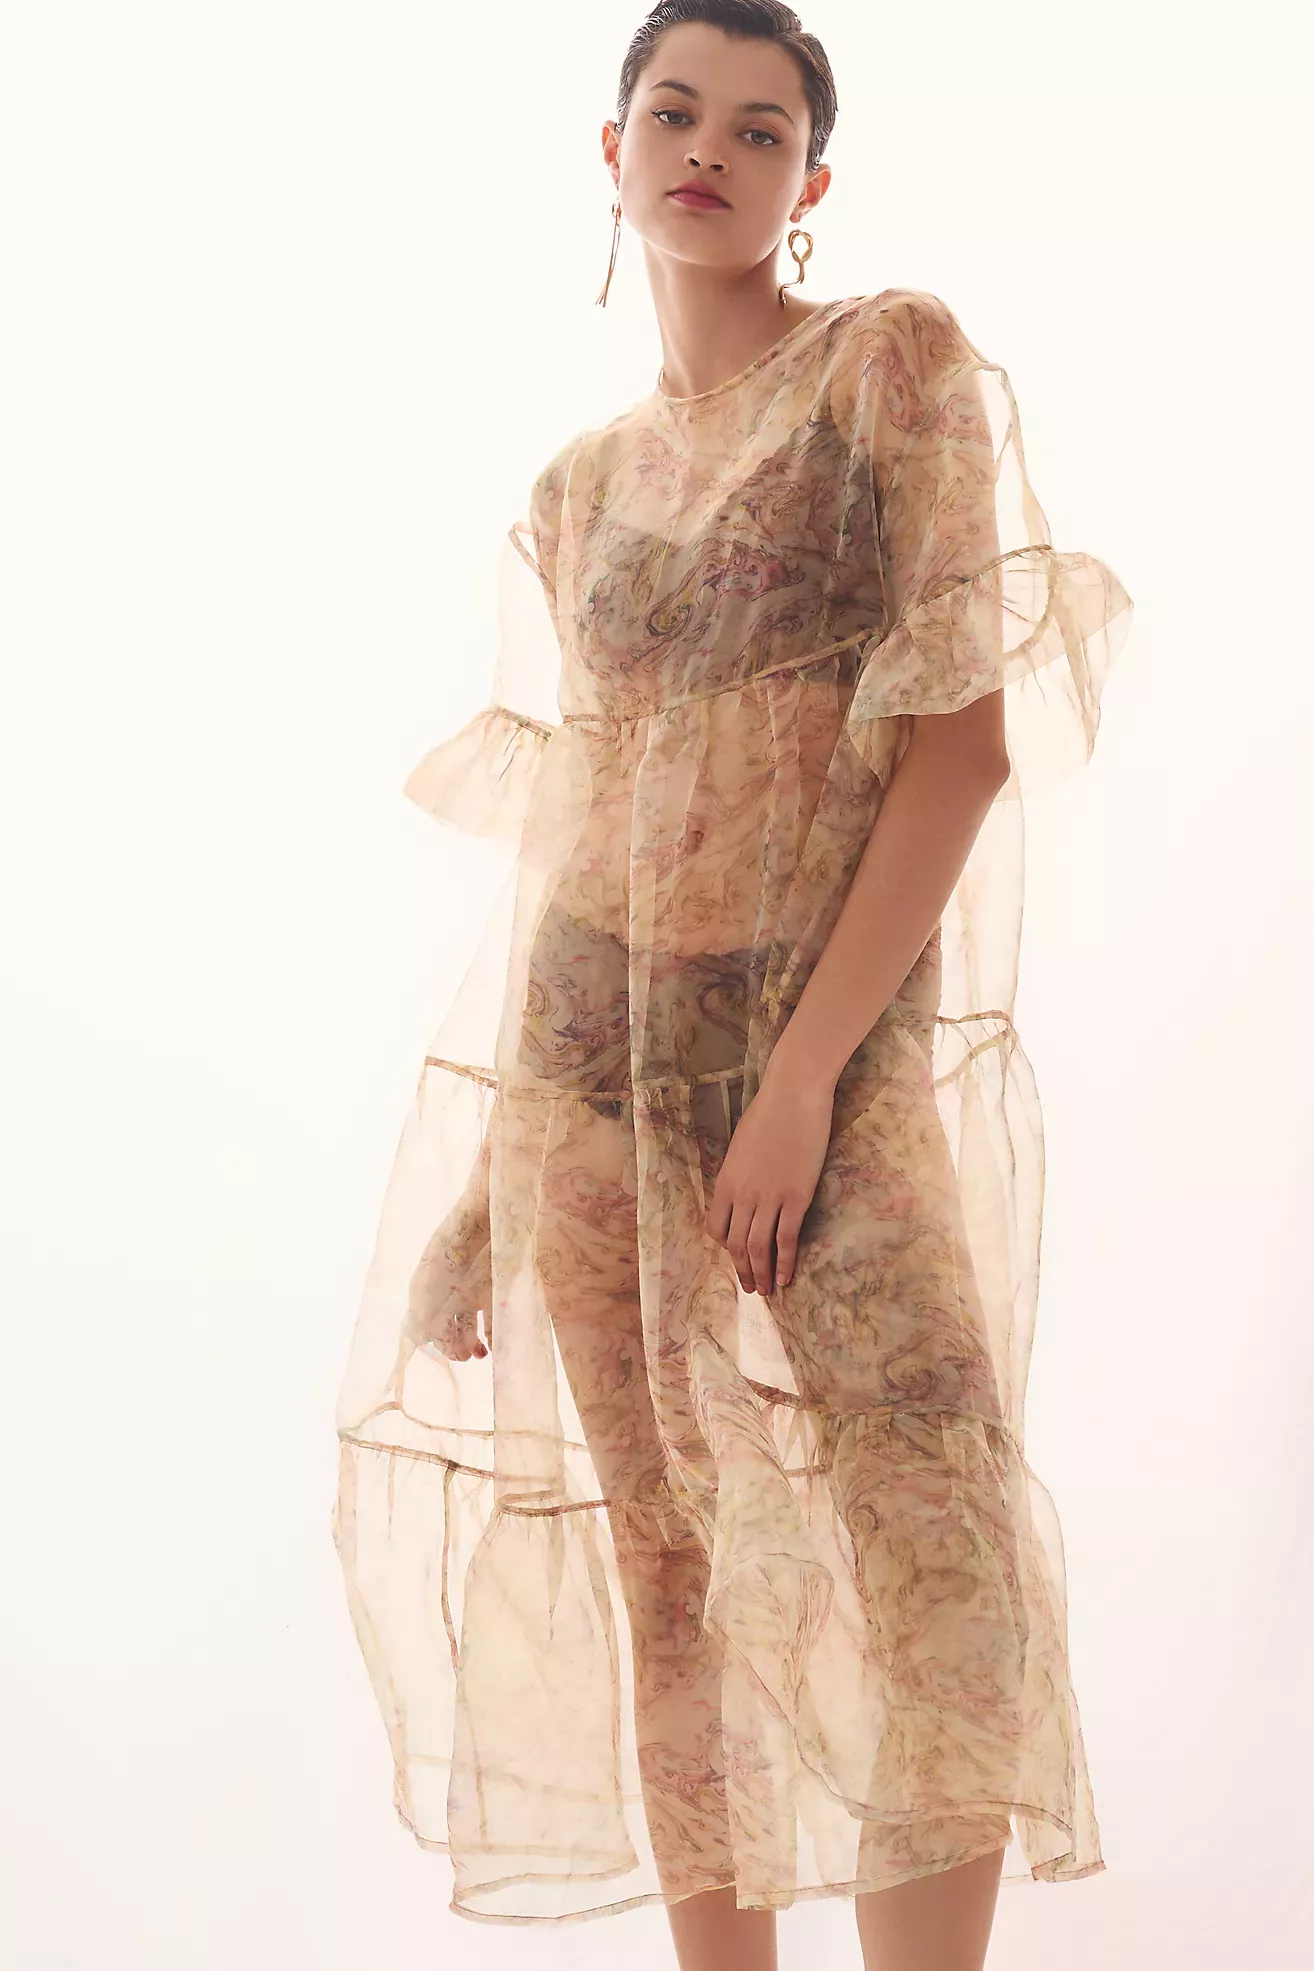 Maeve Tulle-Hem Slim Tank Dress curated on LTK